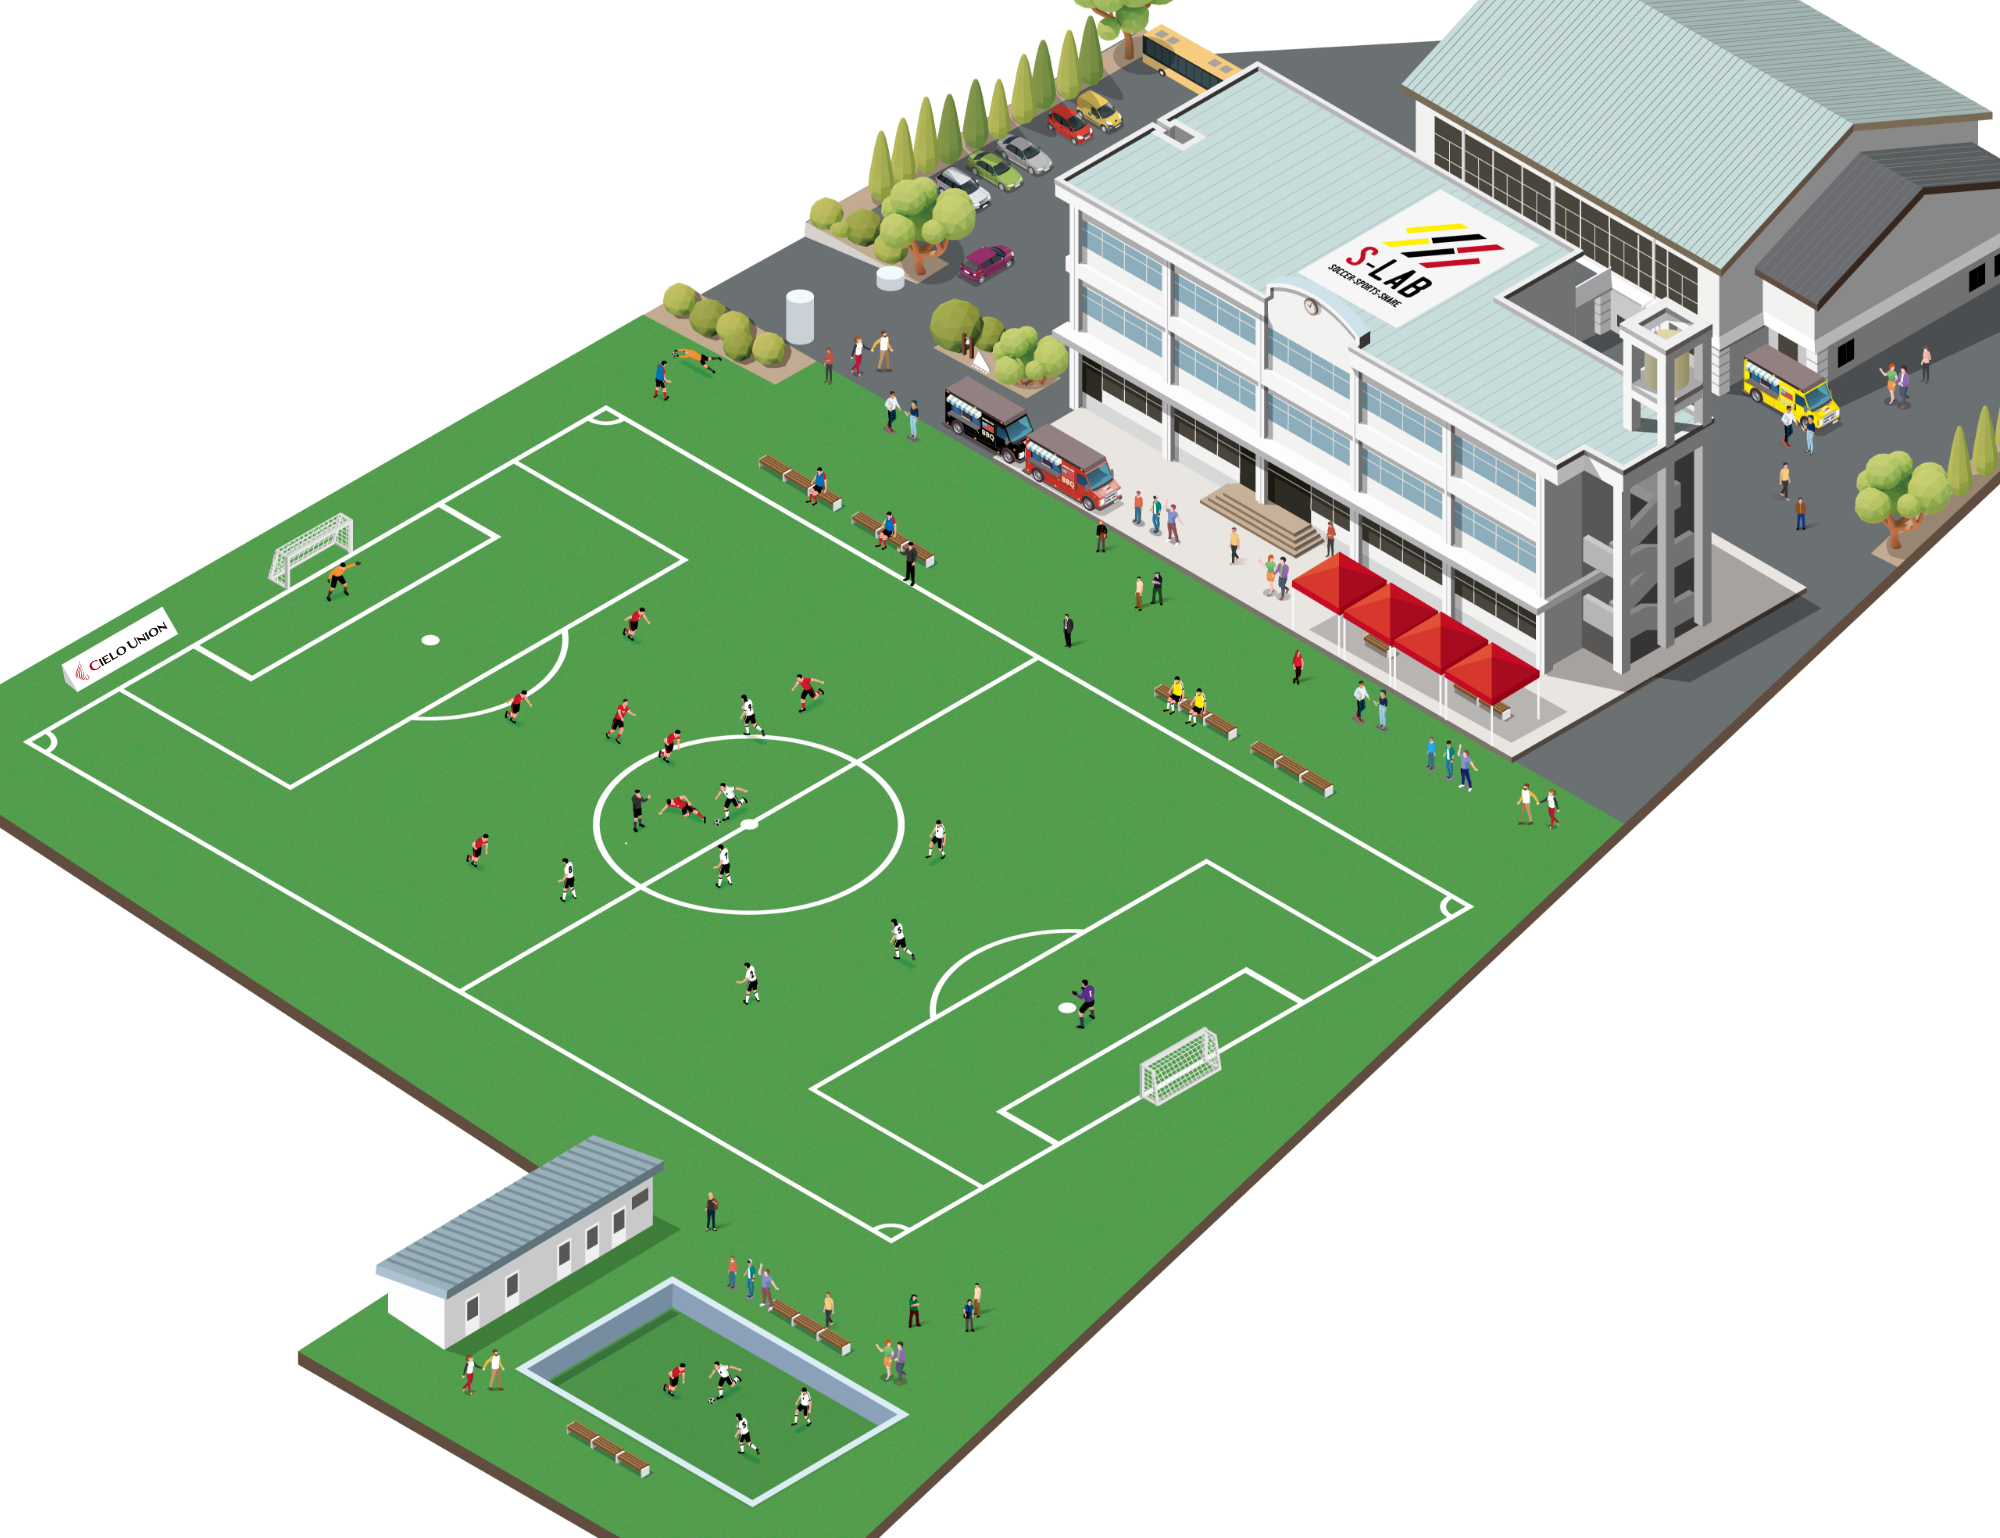 複合型スポーツ施設 S Lab サッカーグランドを核に 人とまちが元気になる学舎